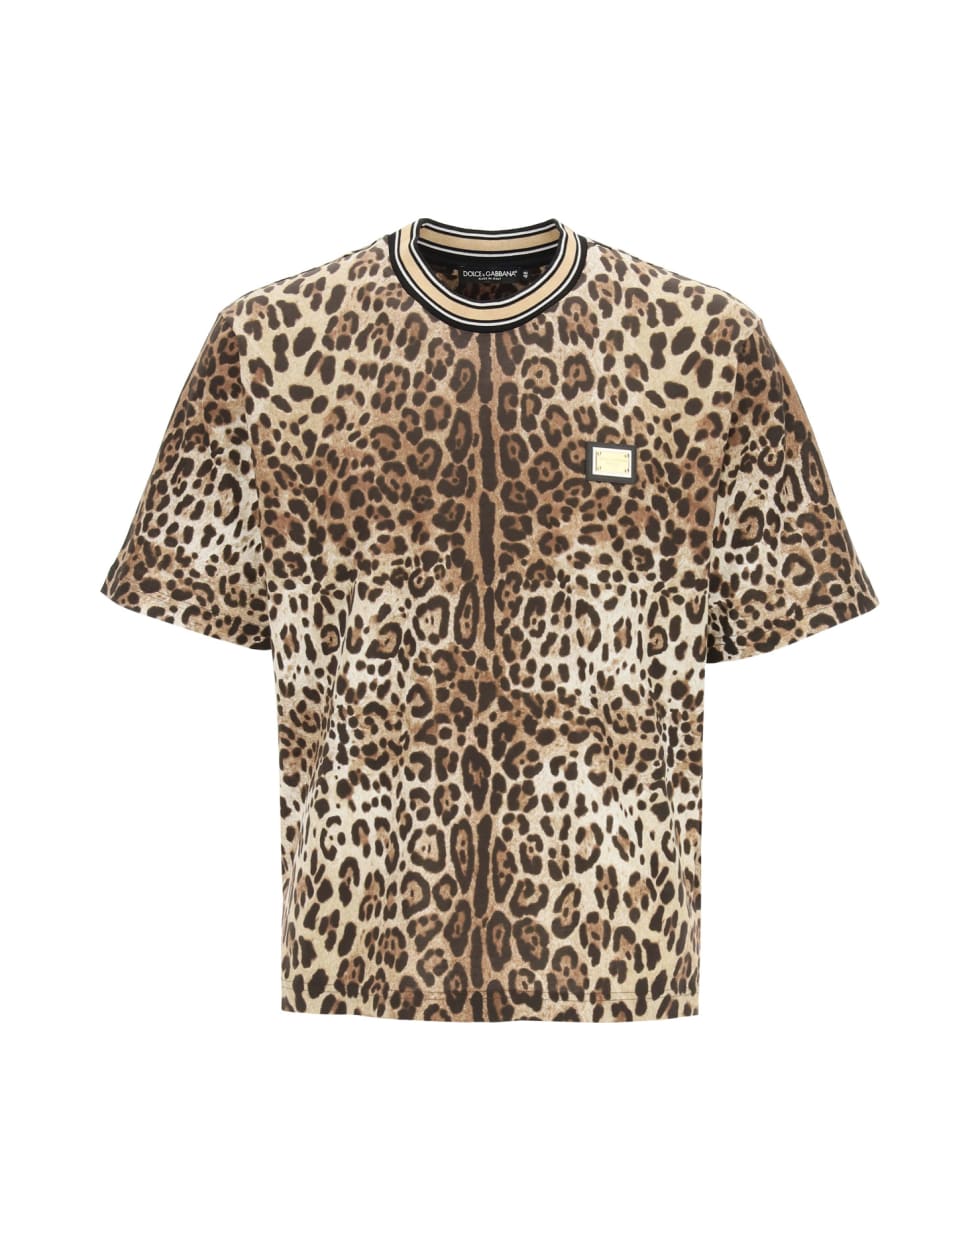 Dolce & Gabbana T-shirt Animalier - BROWN/BLACK